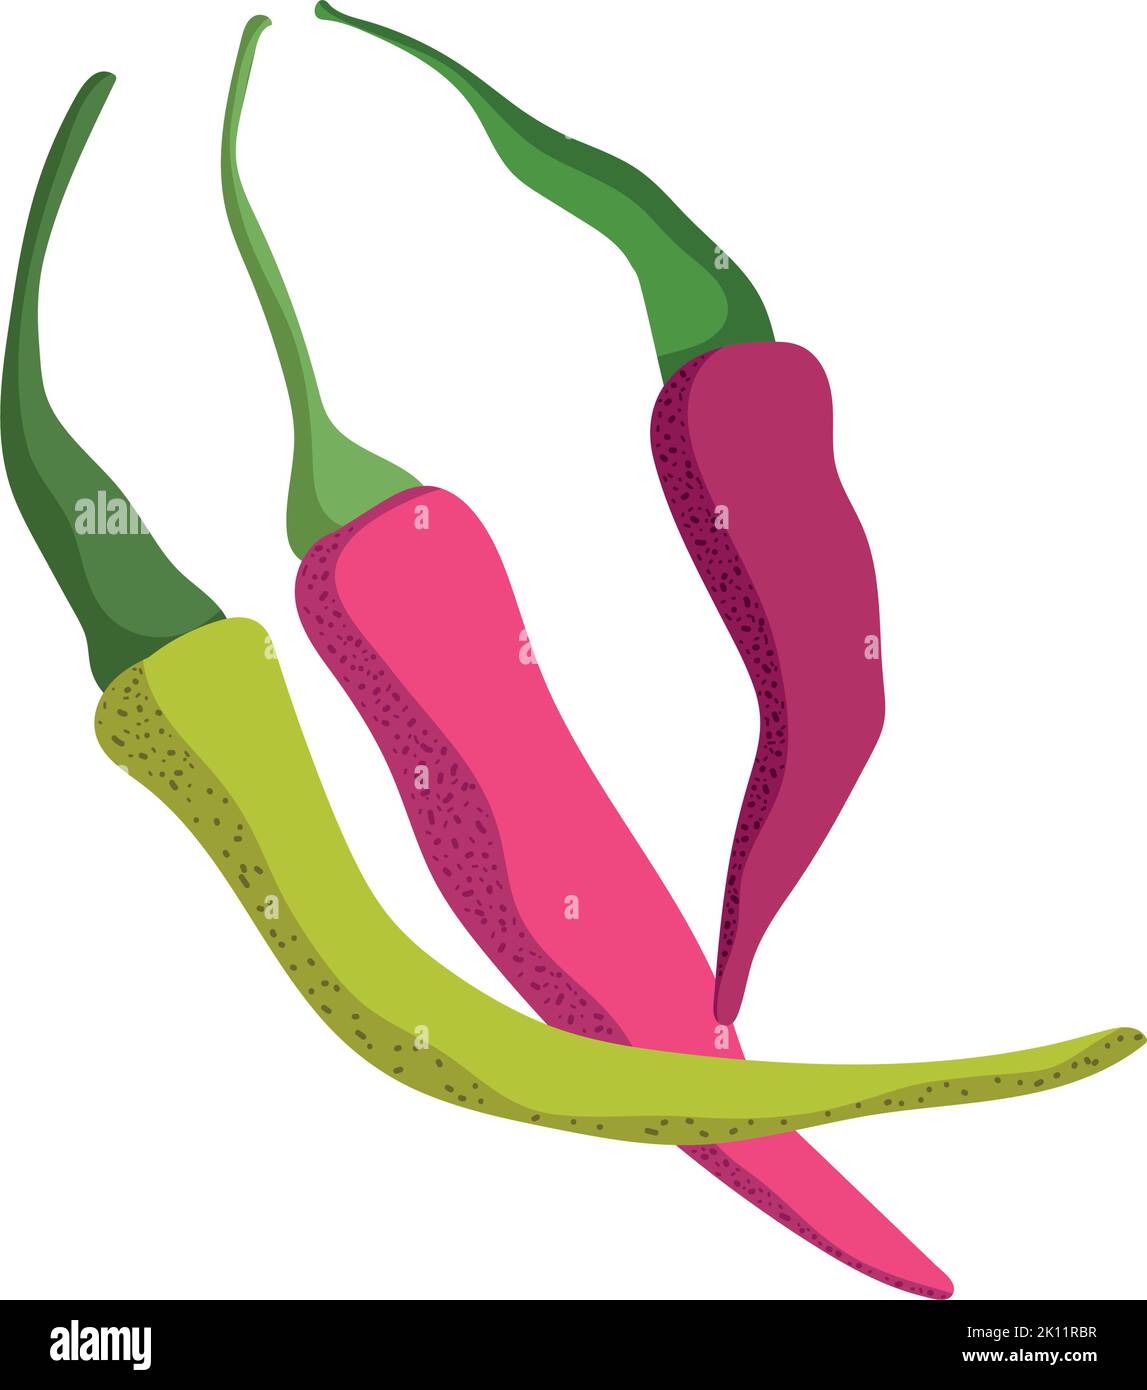 chili pepper icon Stock Vector